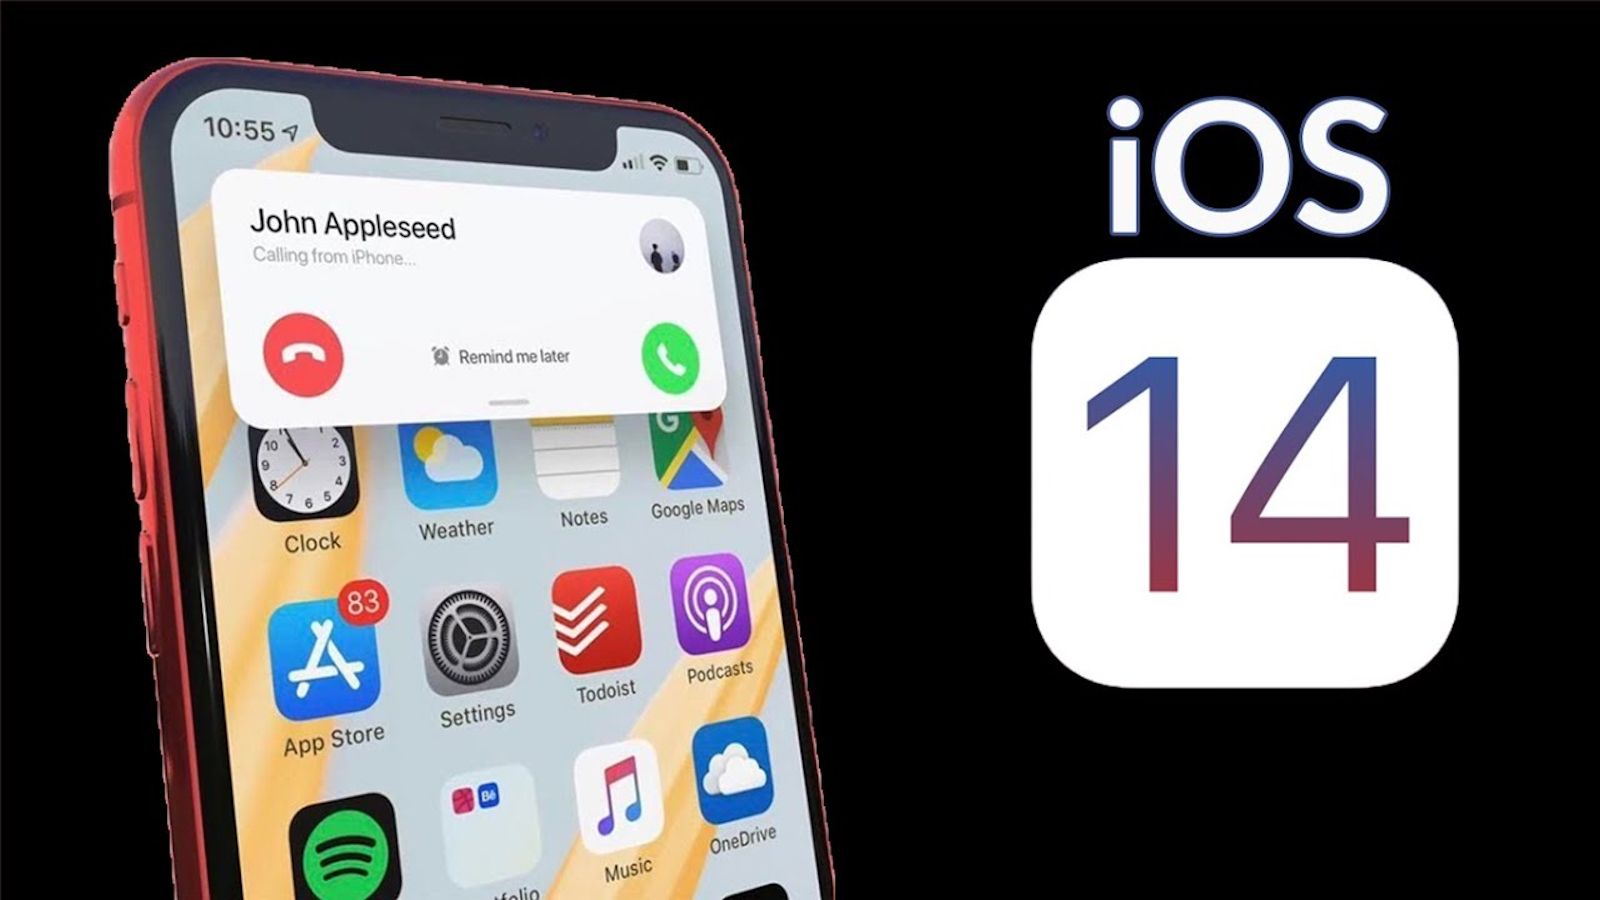 نظام IOS 14 قد يدعم كافة الهواتف الداعمة لنظام IOS 13